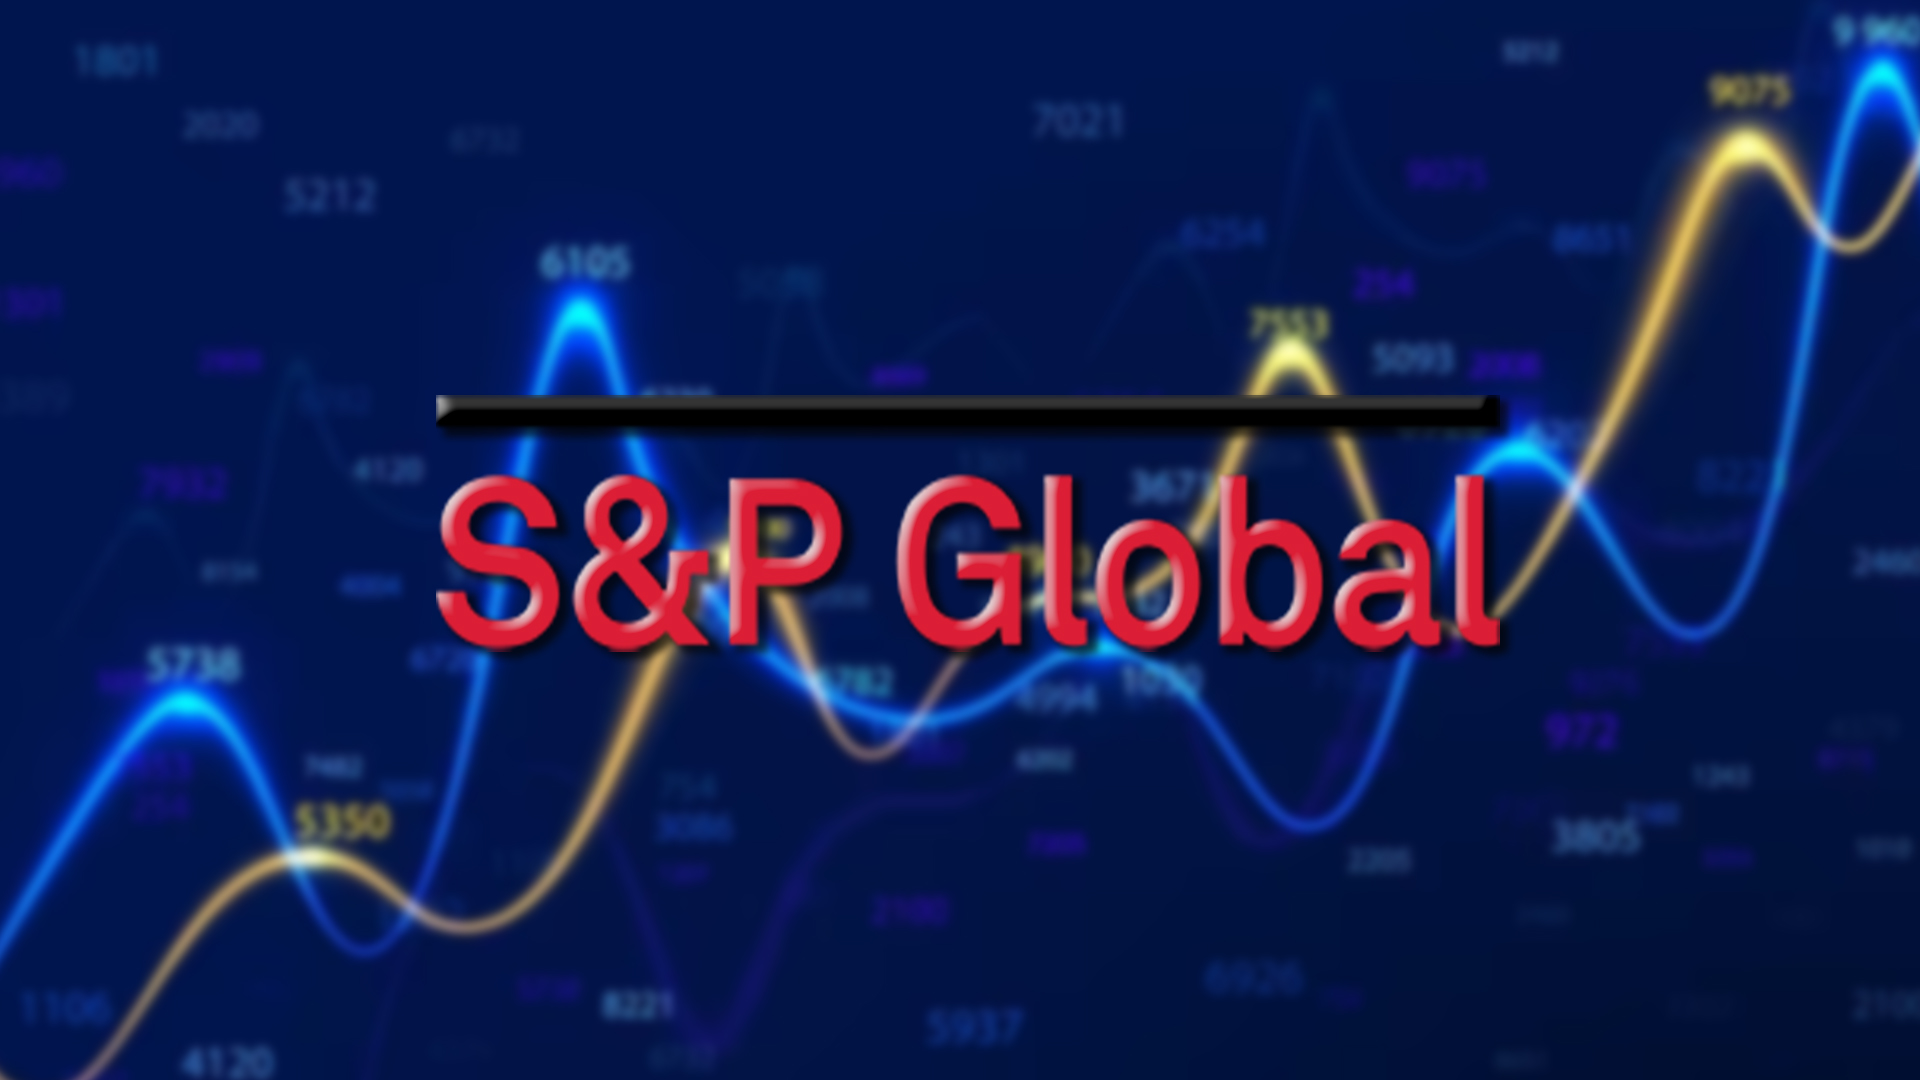 S&P Global Inc. (SPGI) Analysis and Prediction